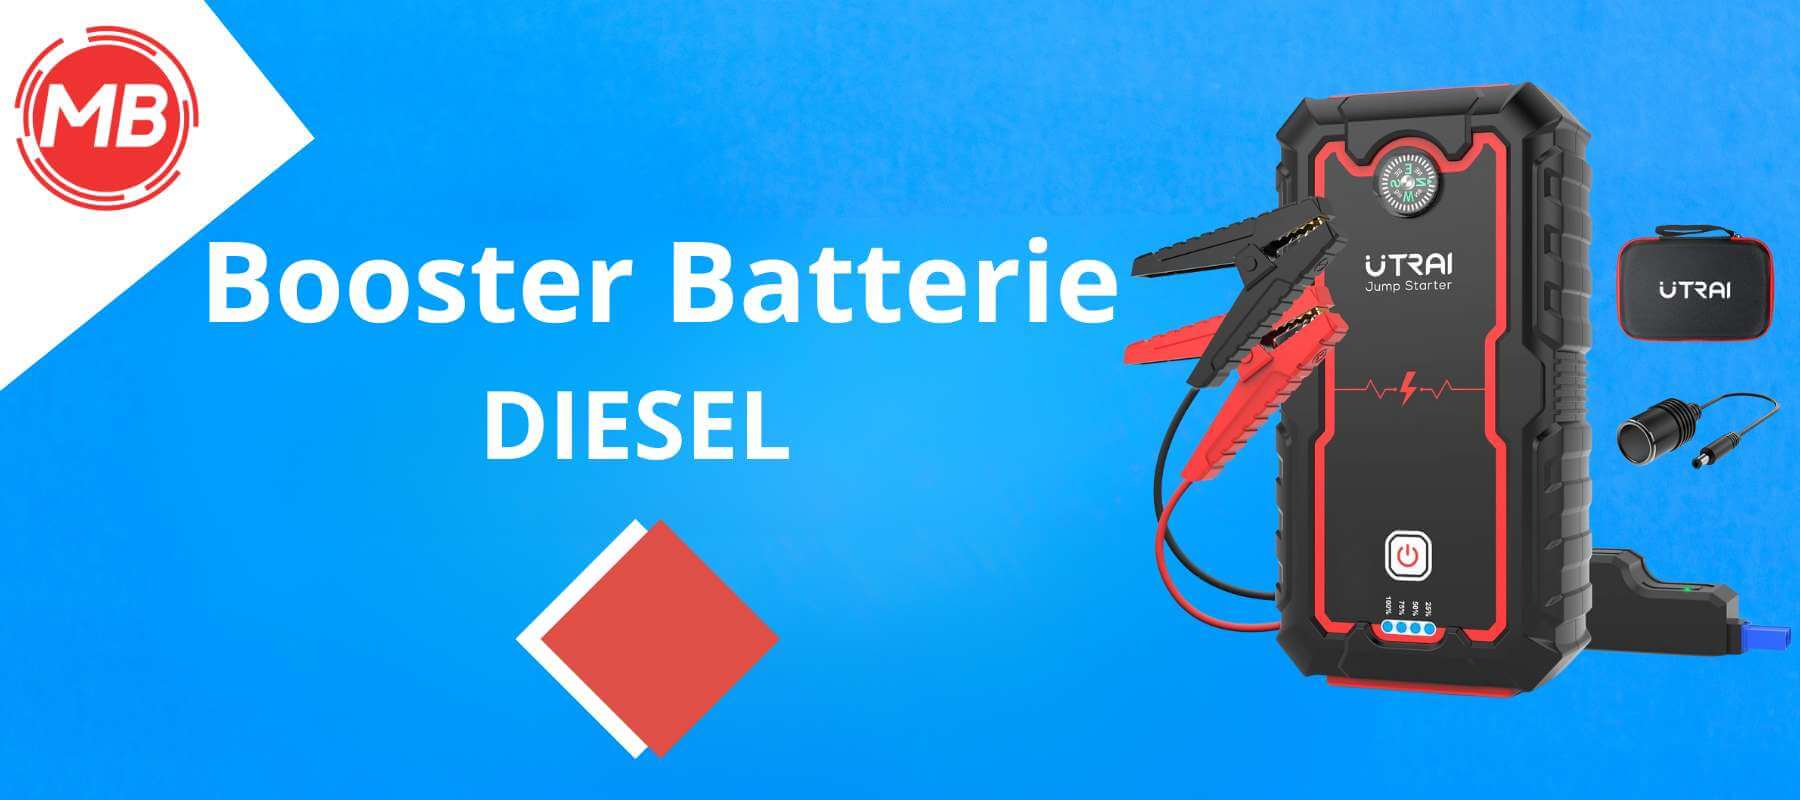 Meilleurs boosters de batterie pour voiture diesel